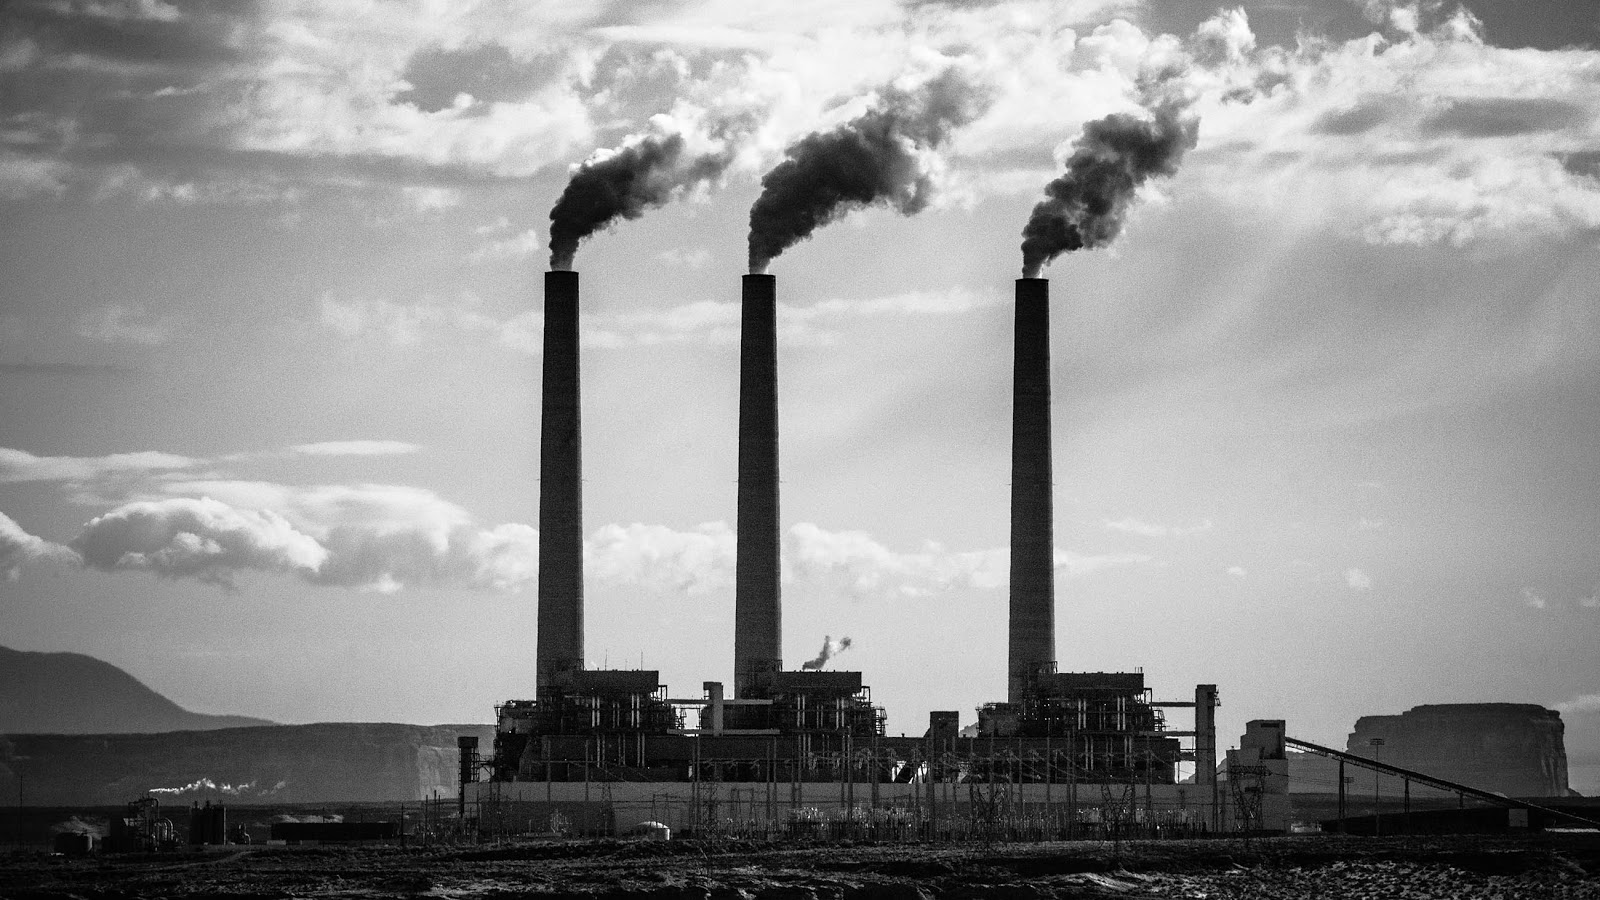 WalmartRamen - A New Day: Environmental Groups Sue Over Oklahoma Coal